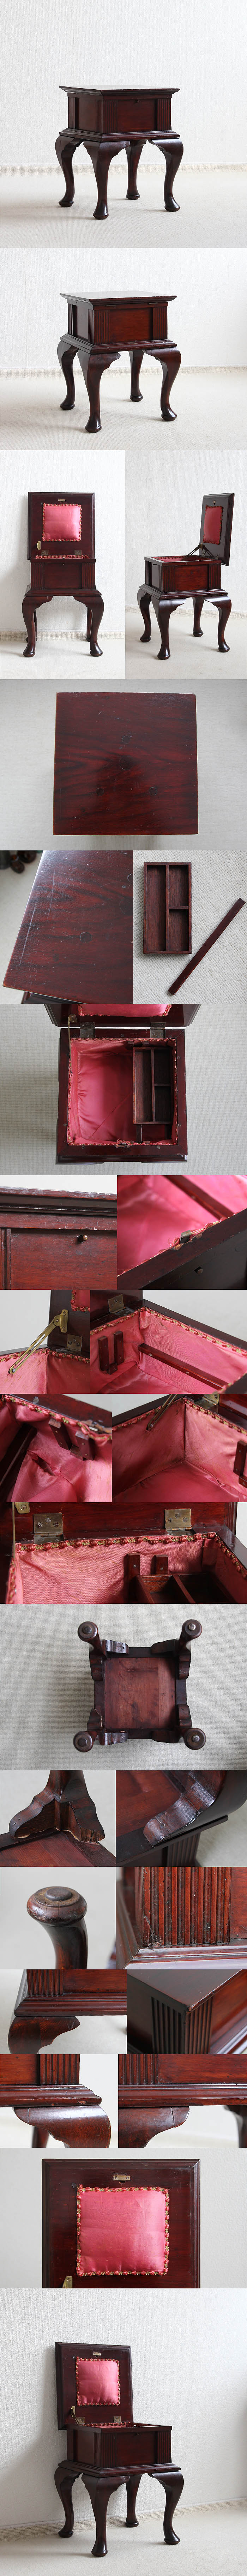 イギリス アンティーク ソーイングボックス 裁縫箱 テーブル 収納家具「おしゃれな猫脚」P-128